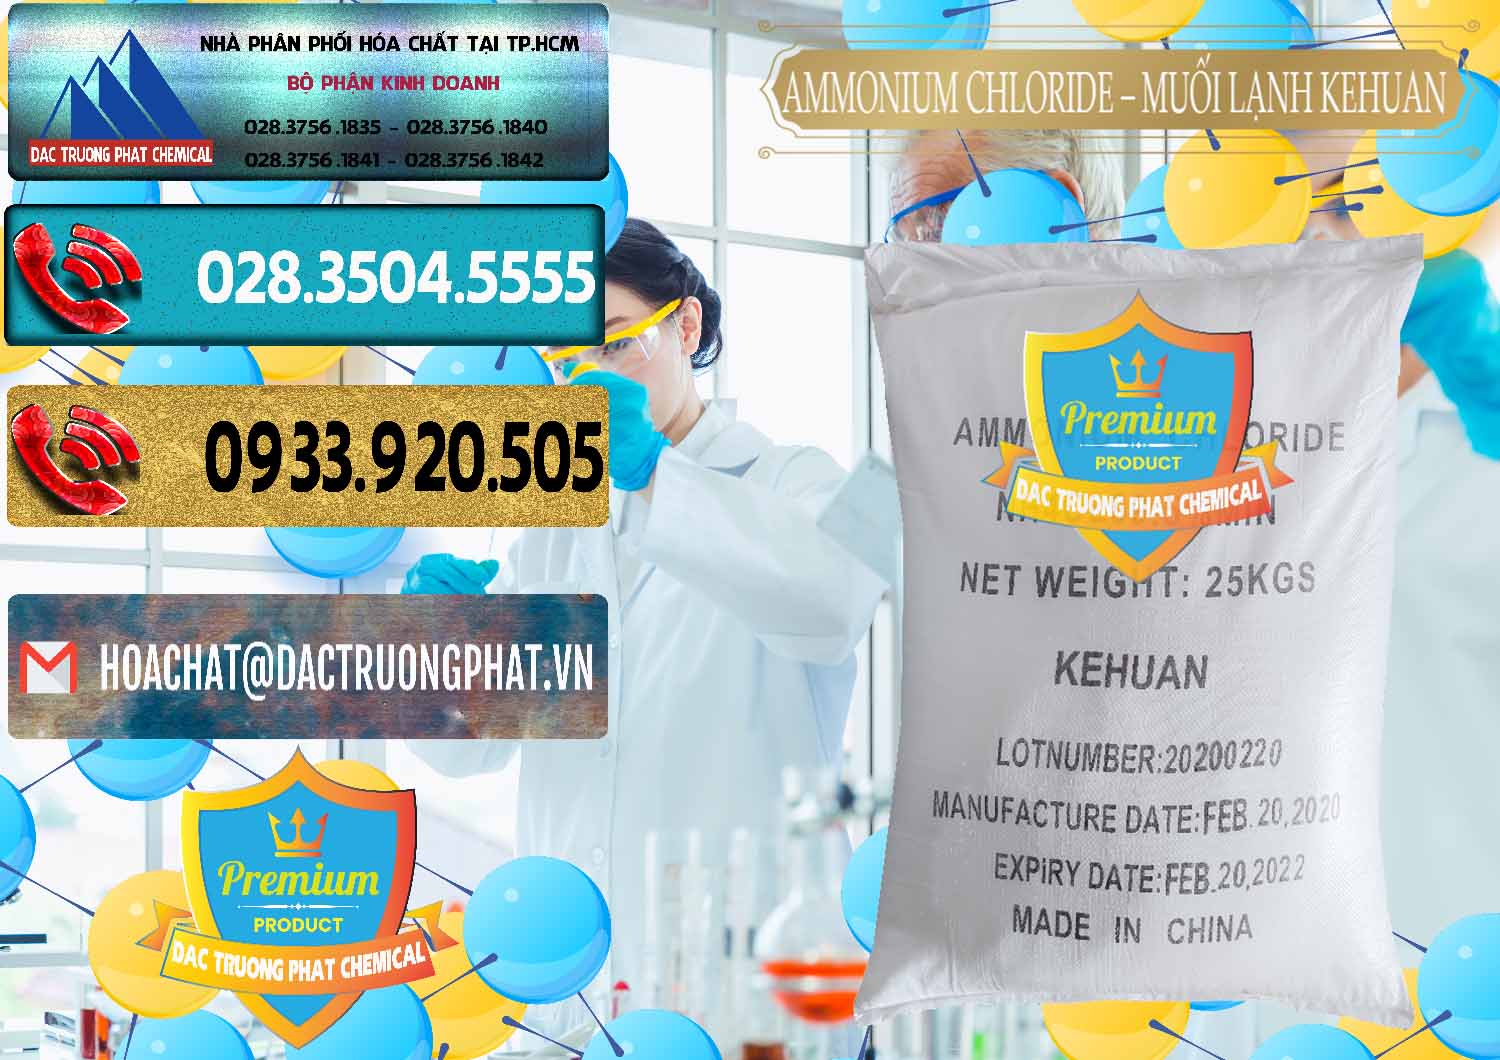 Bán & phân phối Ammonium Chloride – NH4CL Muối Lạnh Kehuan Trung Quốc China - 0022 - Đơn vị cung cấp - phân phối hóa chất tại TP.HCM - hoachatdetnhuom.com